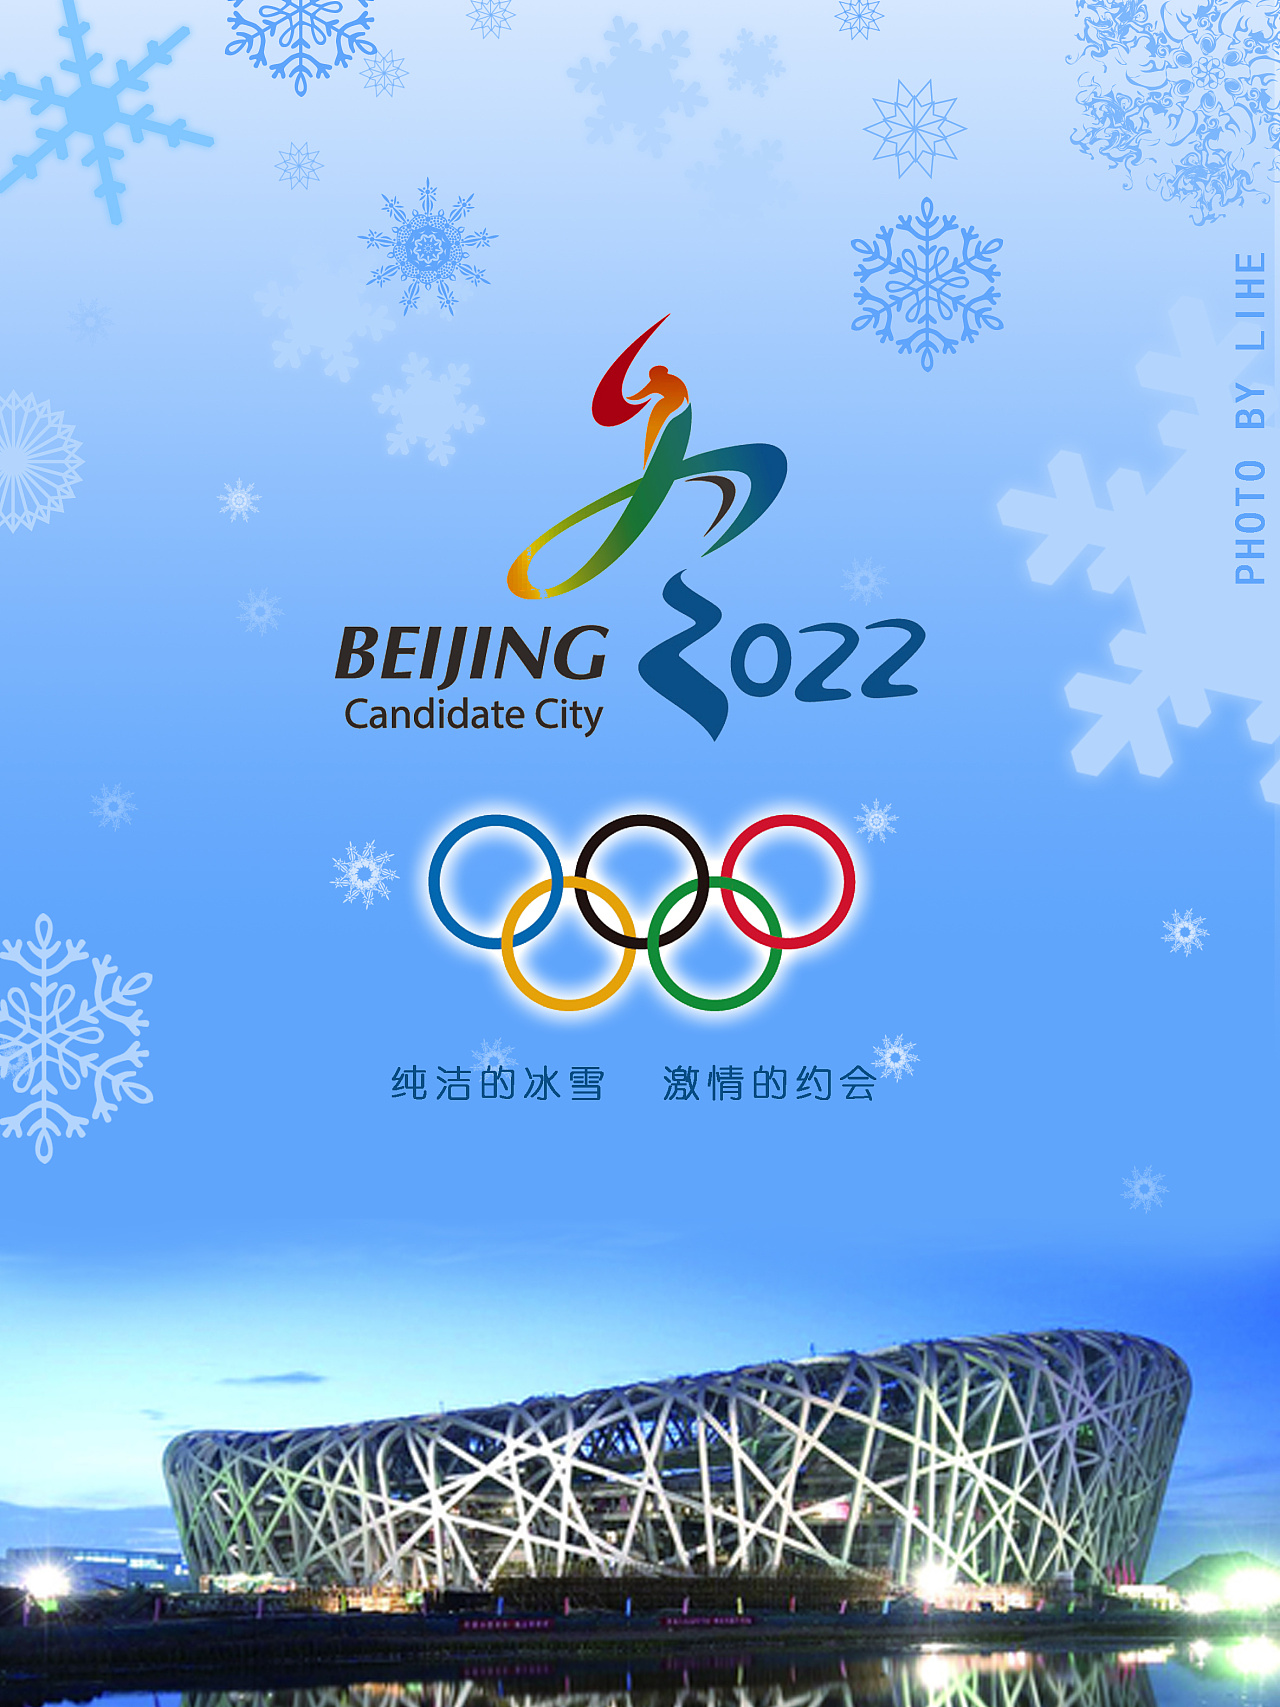 2022冬奥会海报宣传语图片